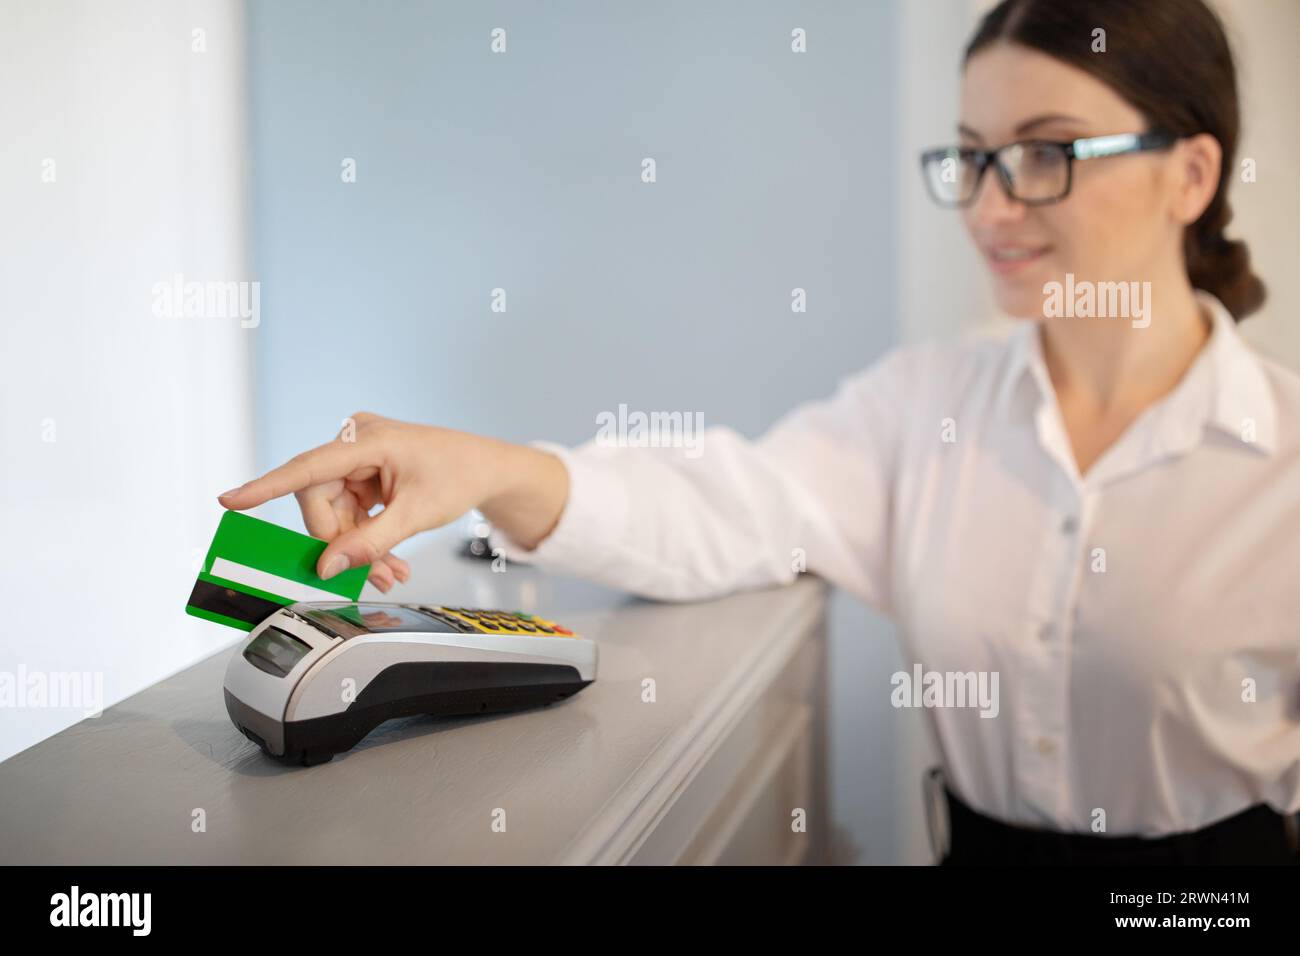 Geschäftsfrau, Die Für Das Hotel Über Kreditkarte Bezahlt, Macht Drinnen Transaktionen Stockfoto